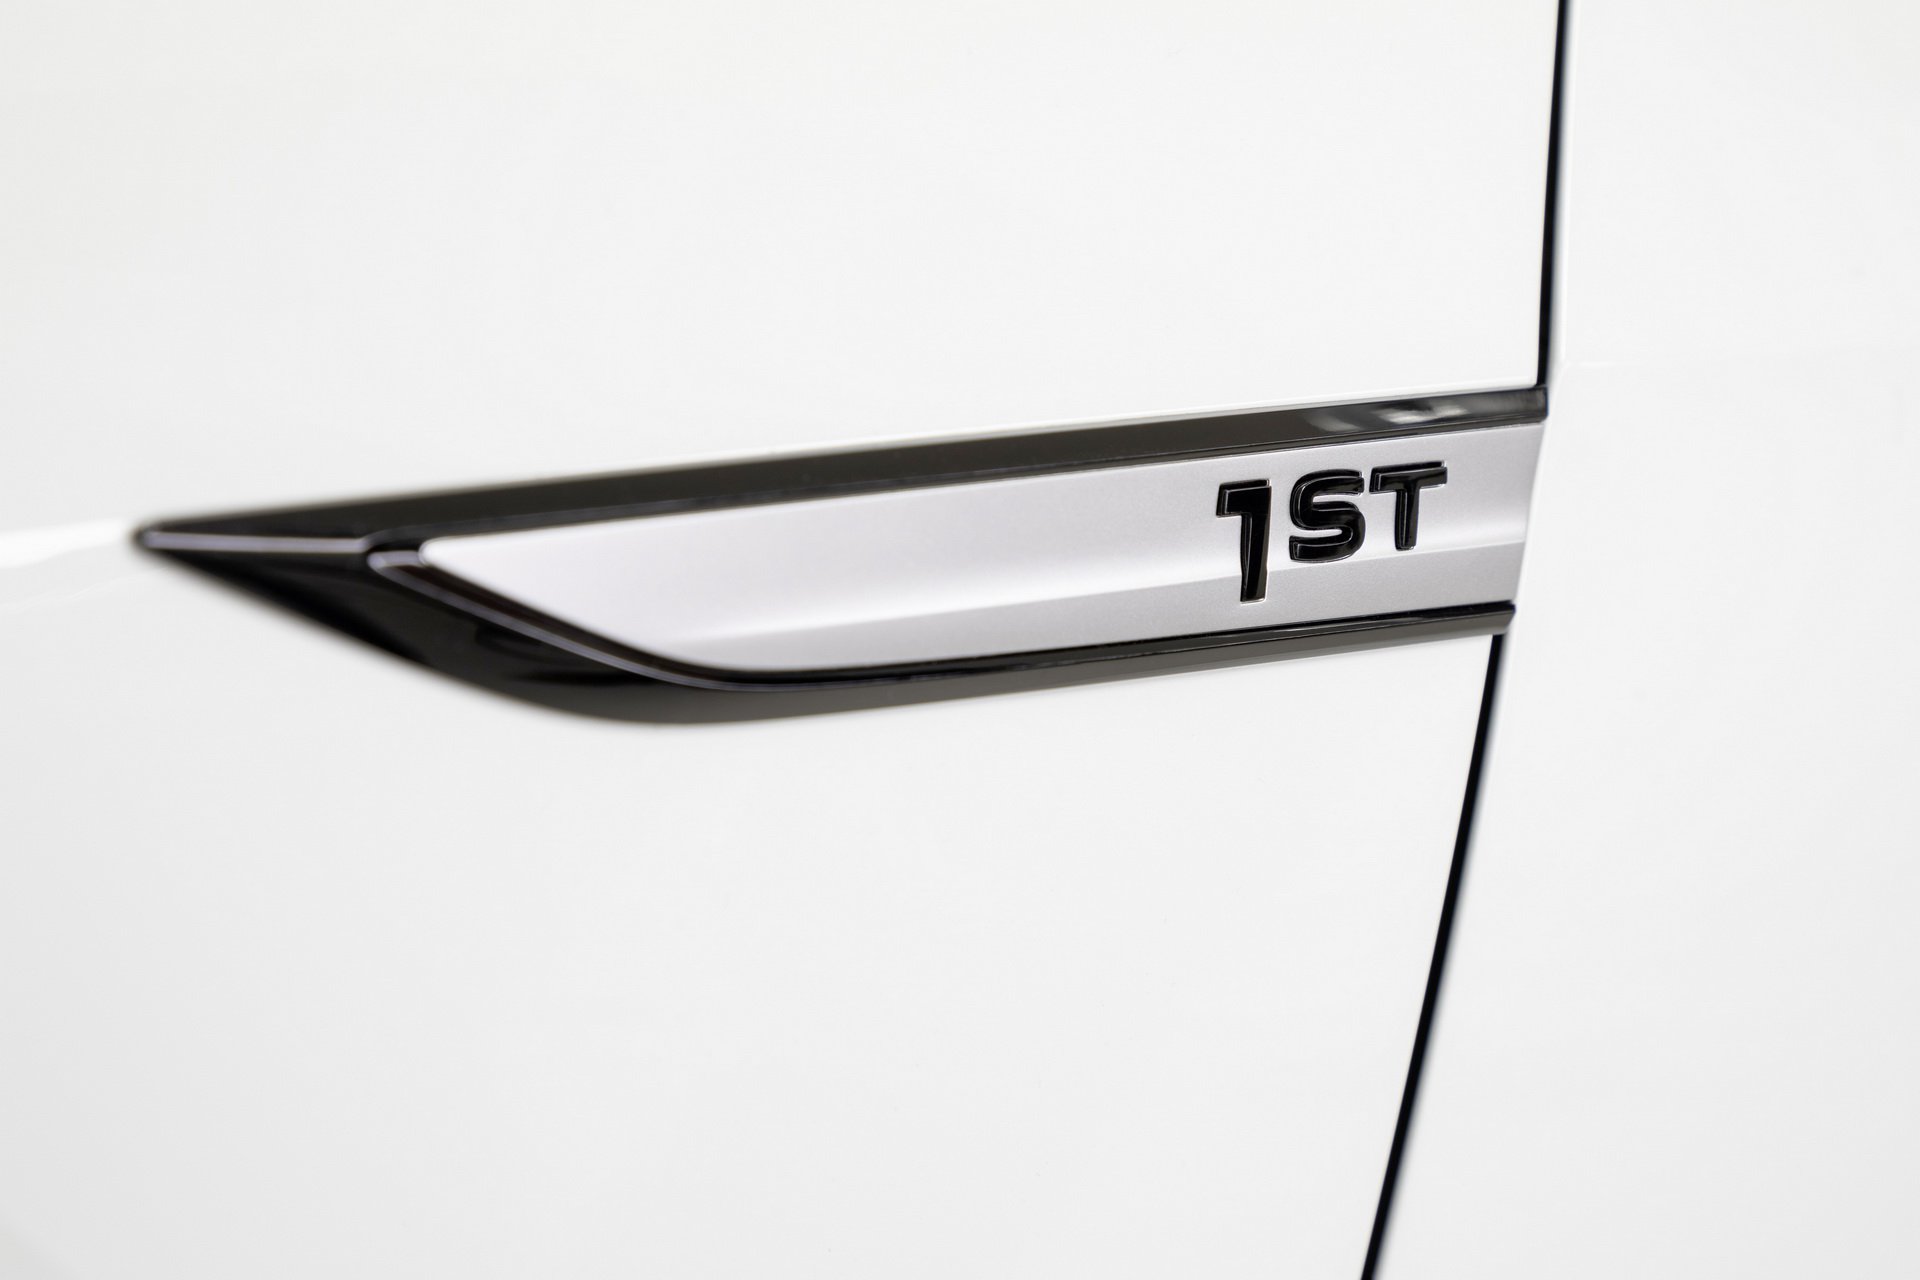 Volkswagen'in elekrikli hatchback modeli ID.3 resmi olarak tanıtıldı